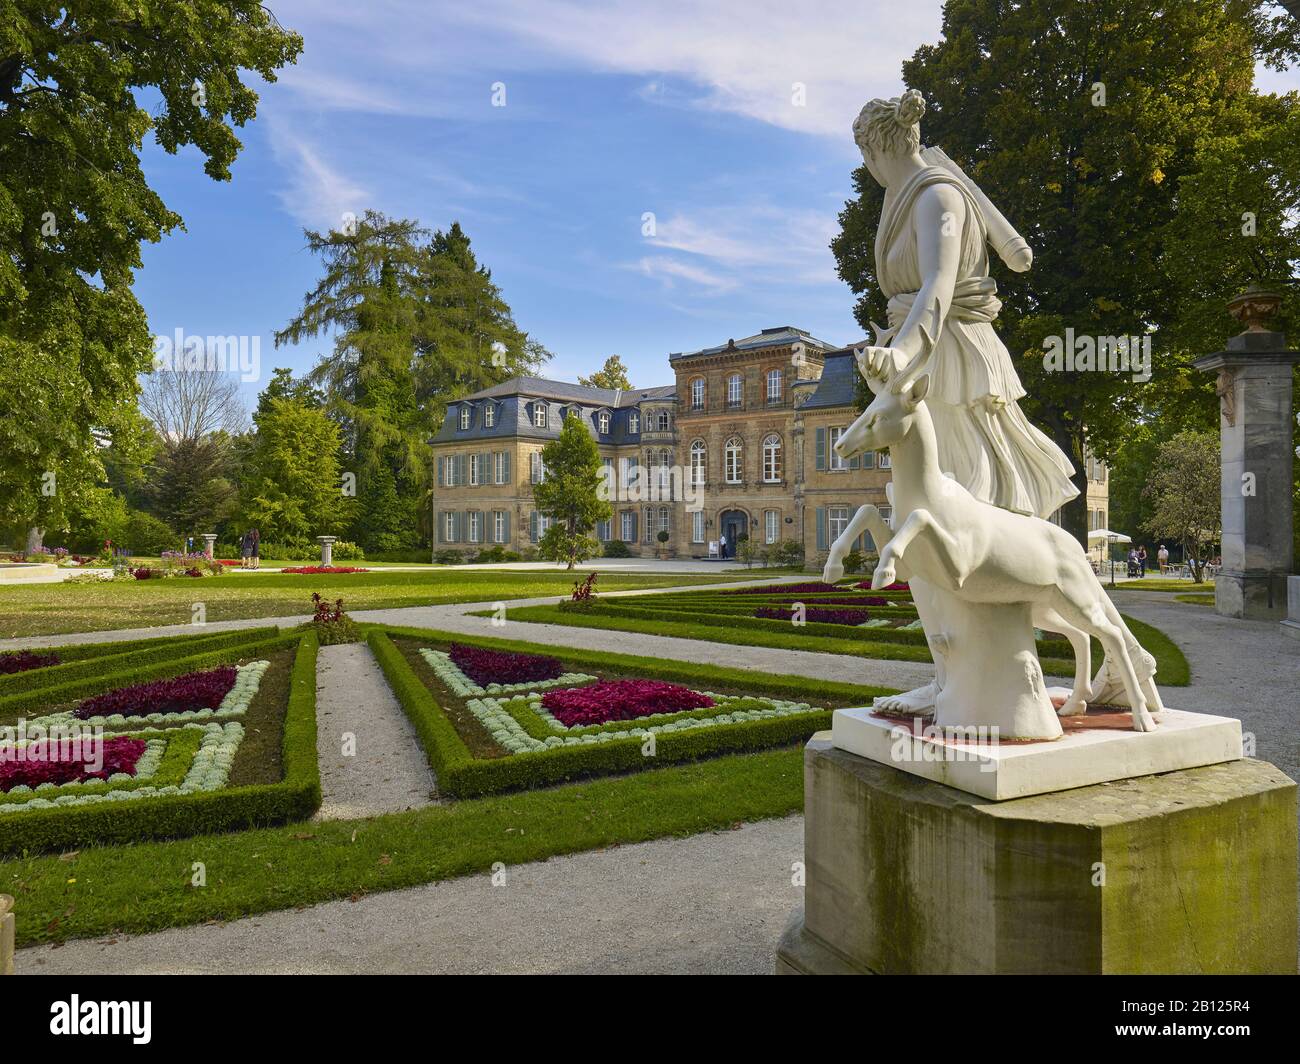 Schloss Fantaisie mit Teppichbett und Skulptur, Eckersdorf, Oberfranken, Deutschland Stockfoto